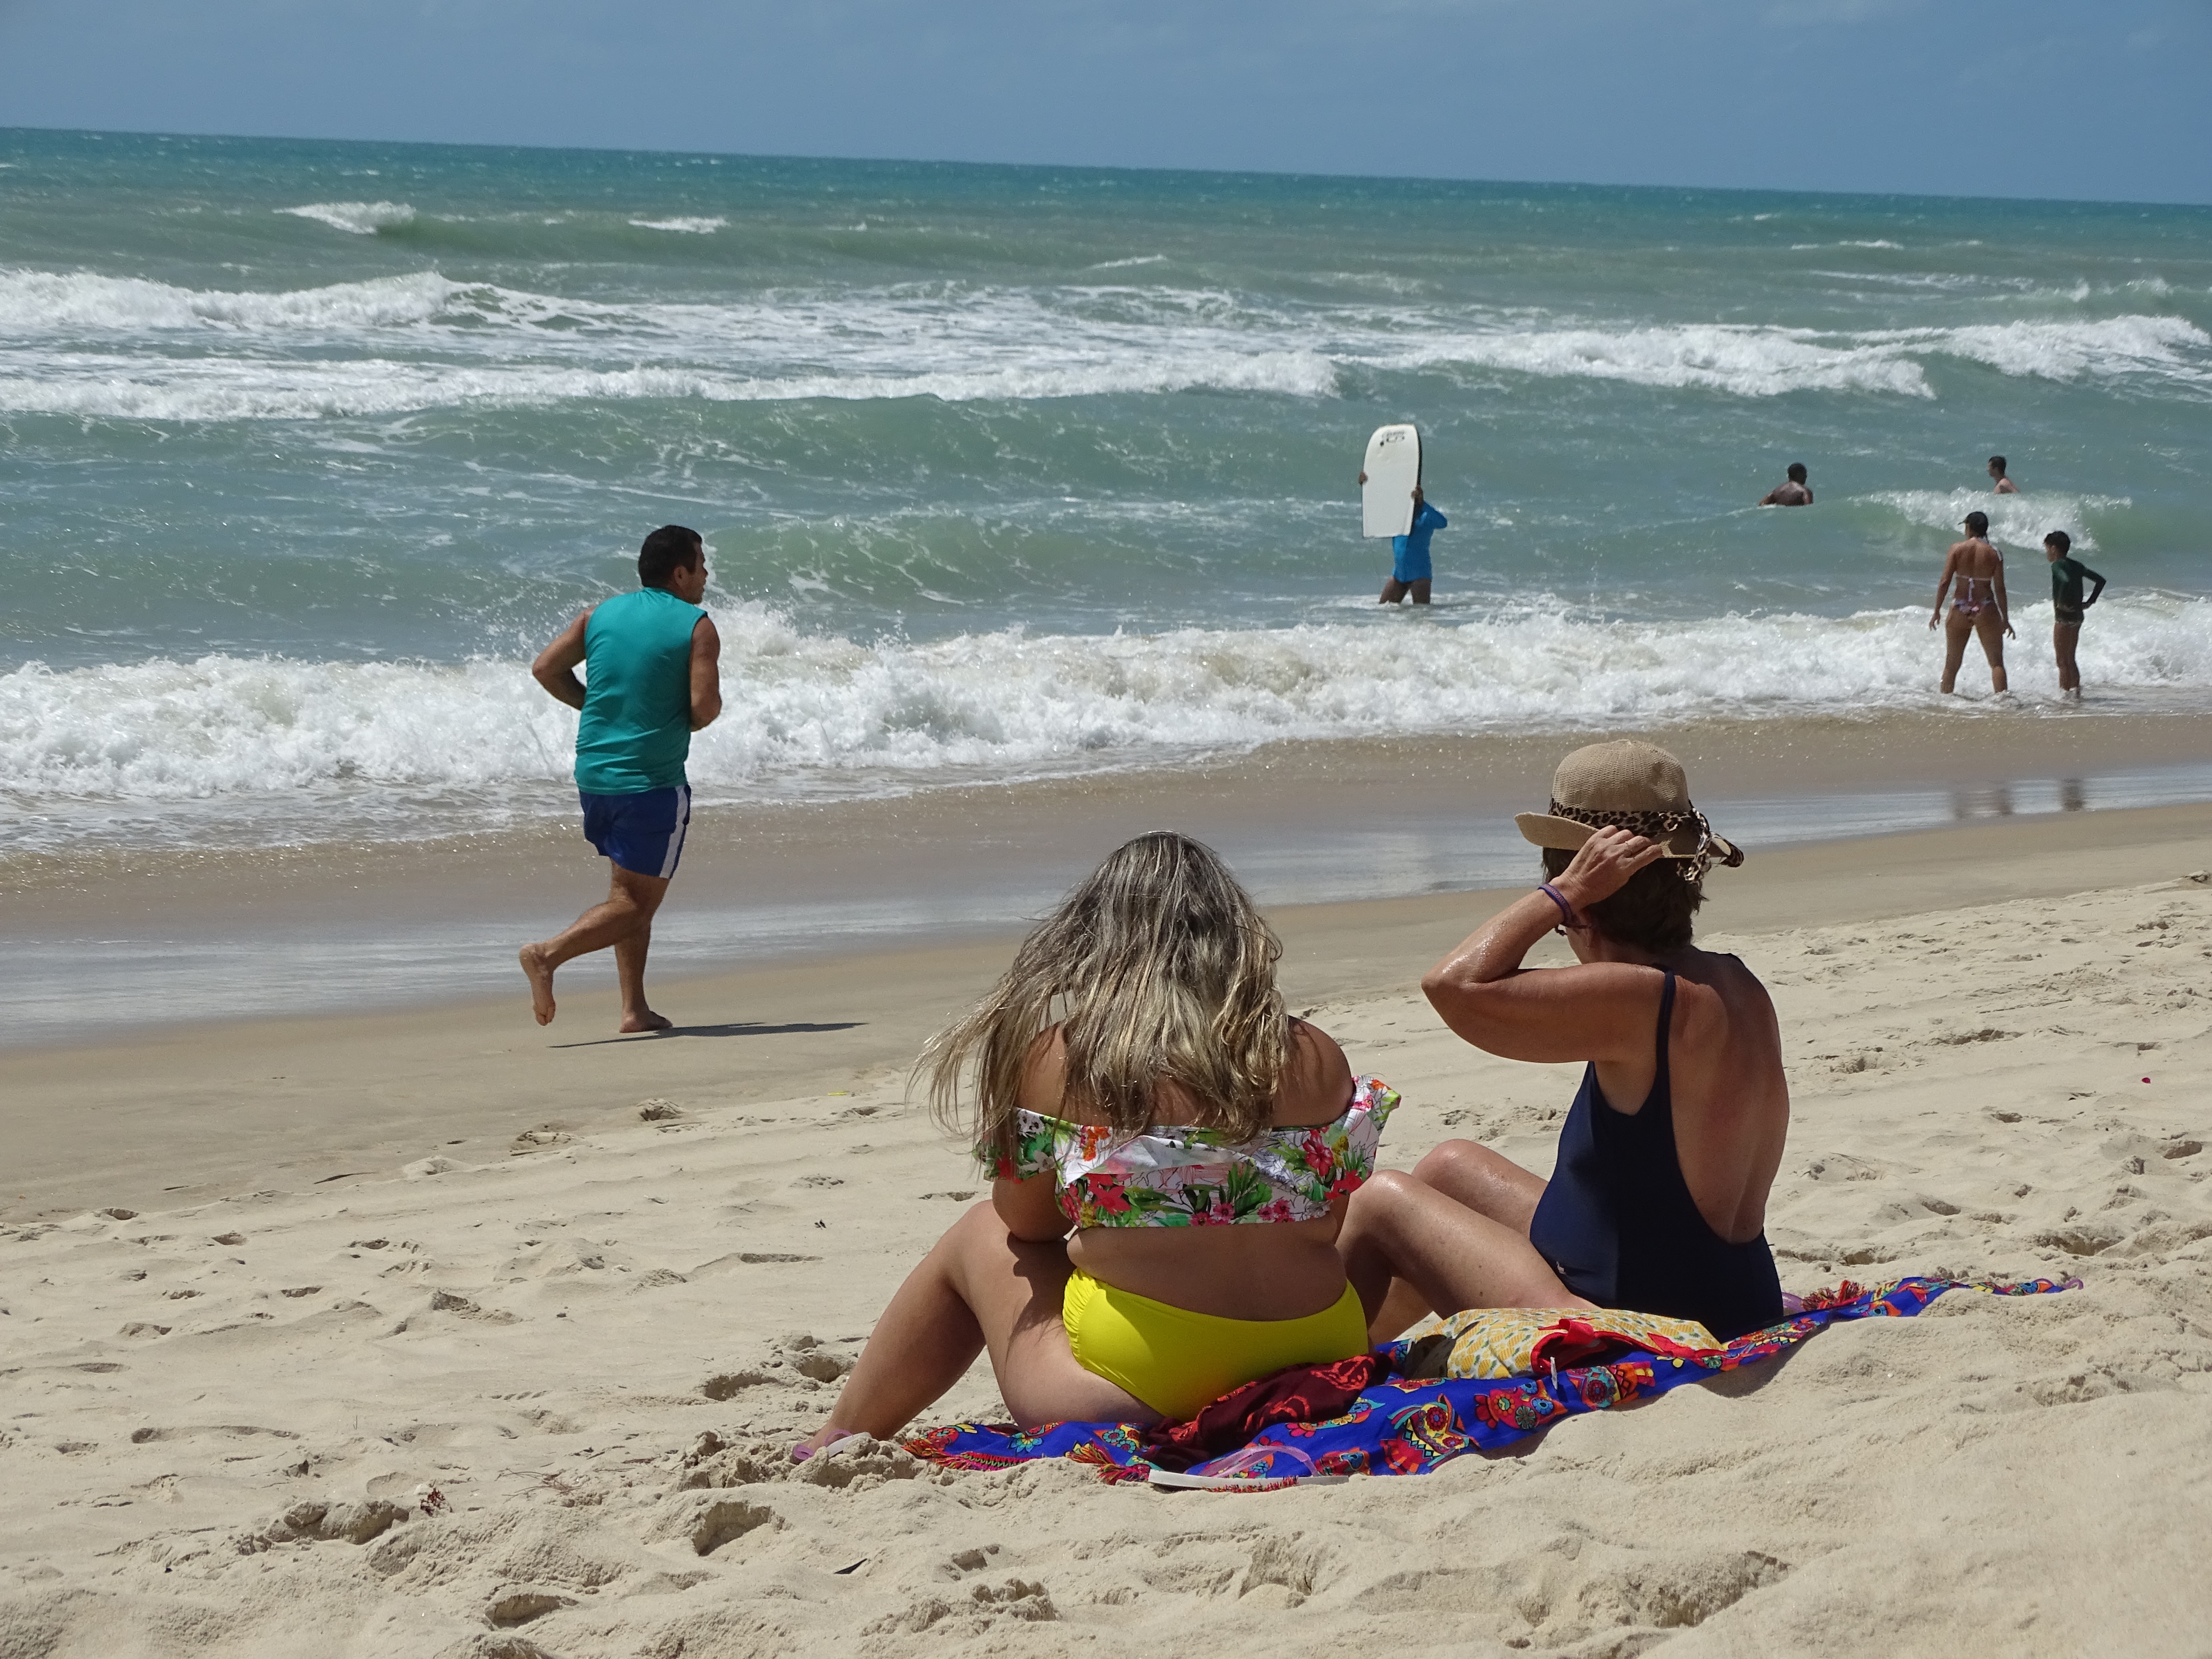 Fotografia da praia. Em primeiro plano, duas mulheres estão sentadas na areia olhando o mar. Uma delas coloca um chapéu na cabeça. Mais a frente um homem corre pela praia. Alguns banhistas estão dentro d'água